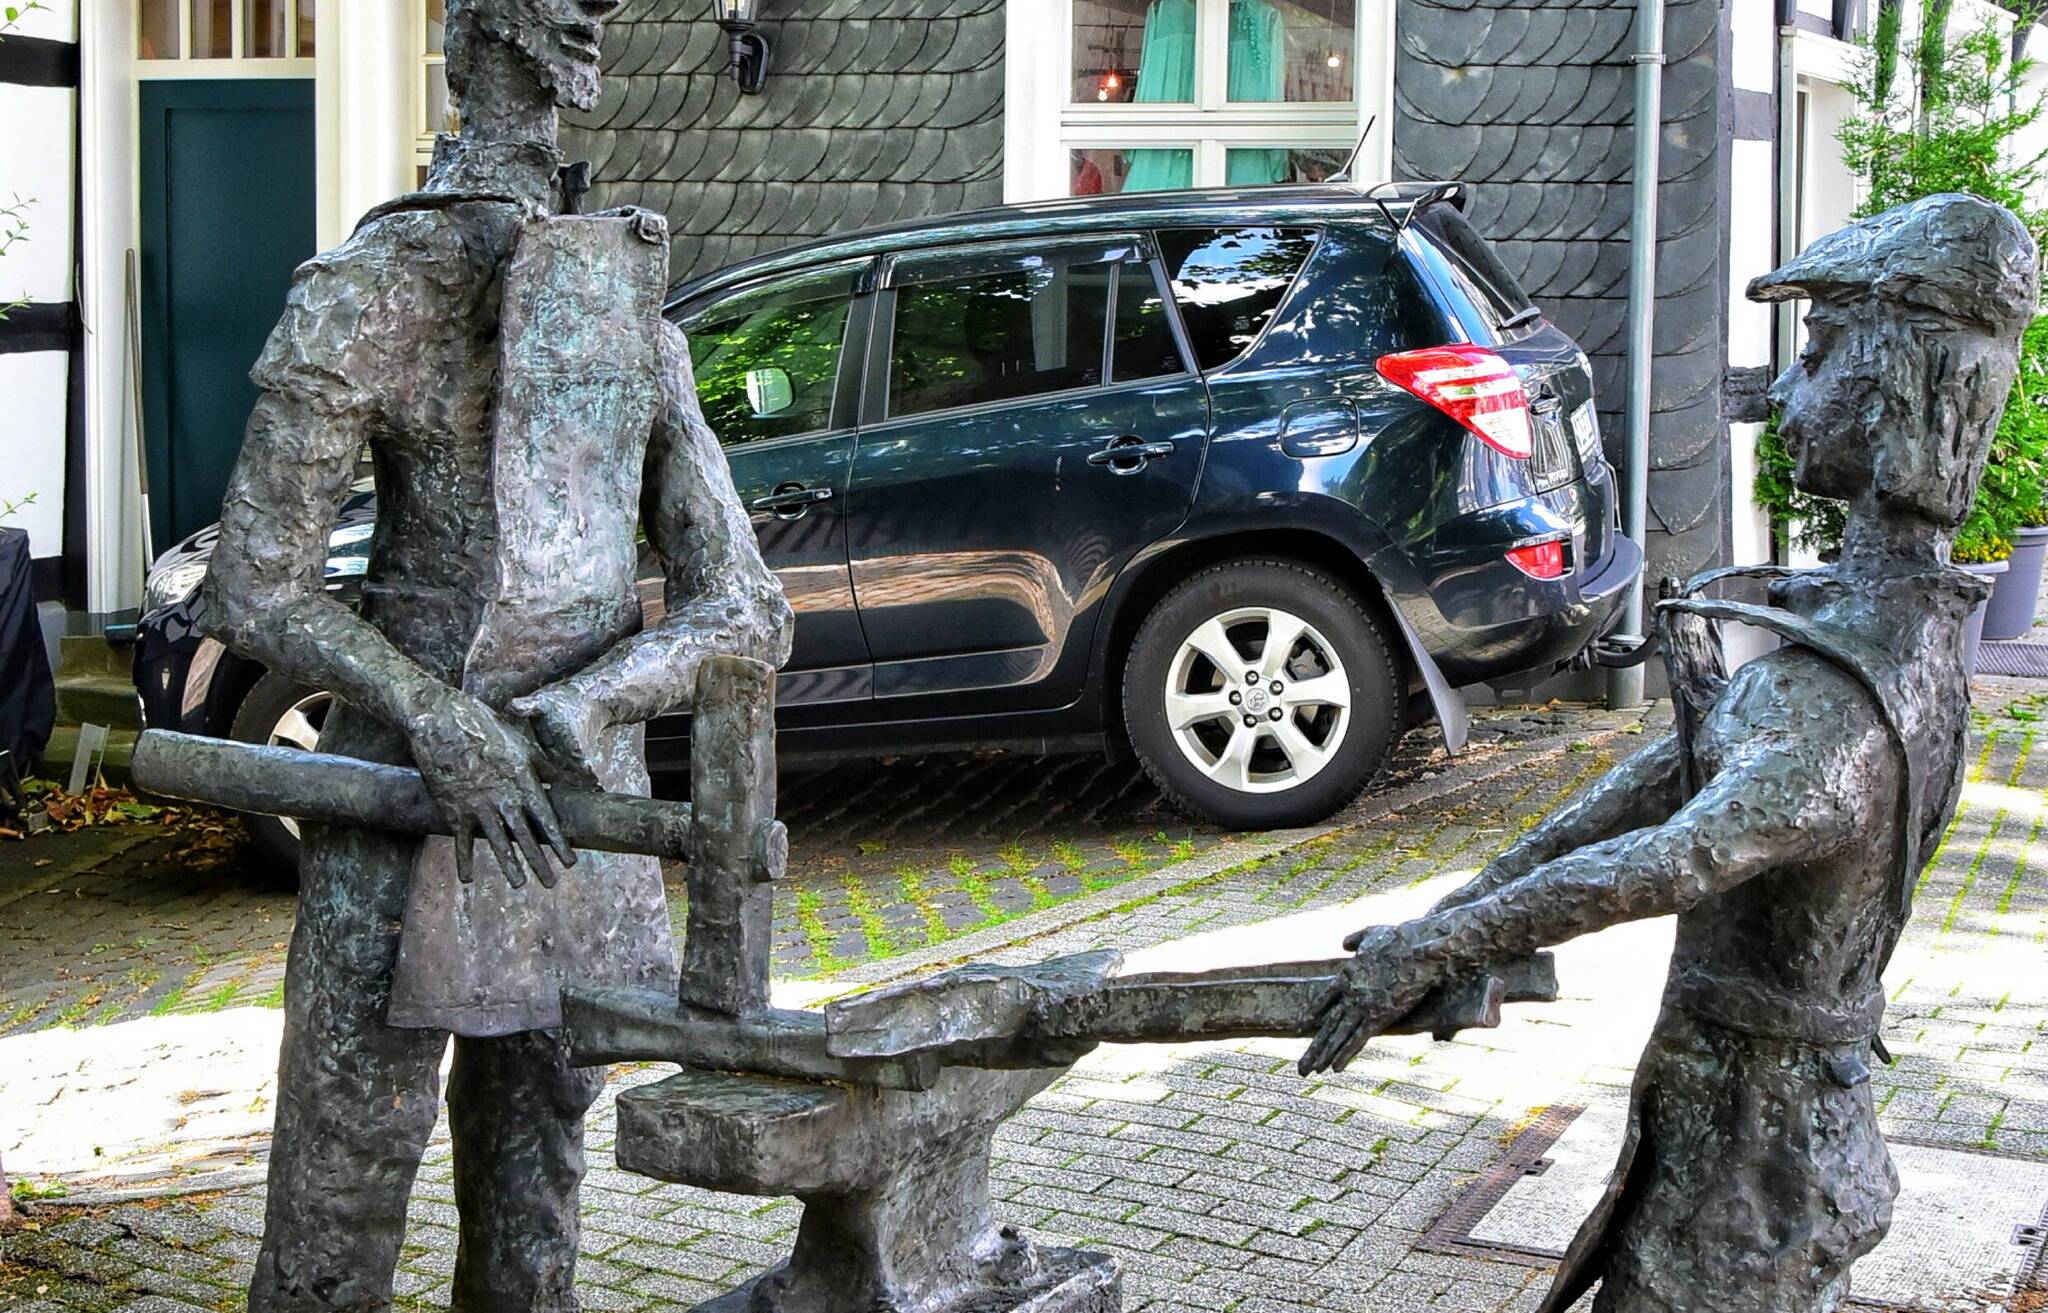  Tradition und Verkehr – zwei wichtige Themen in Cronenberg. 